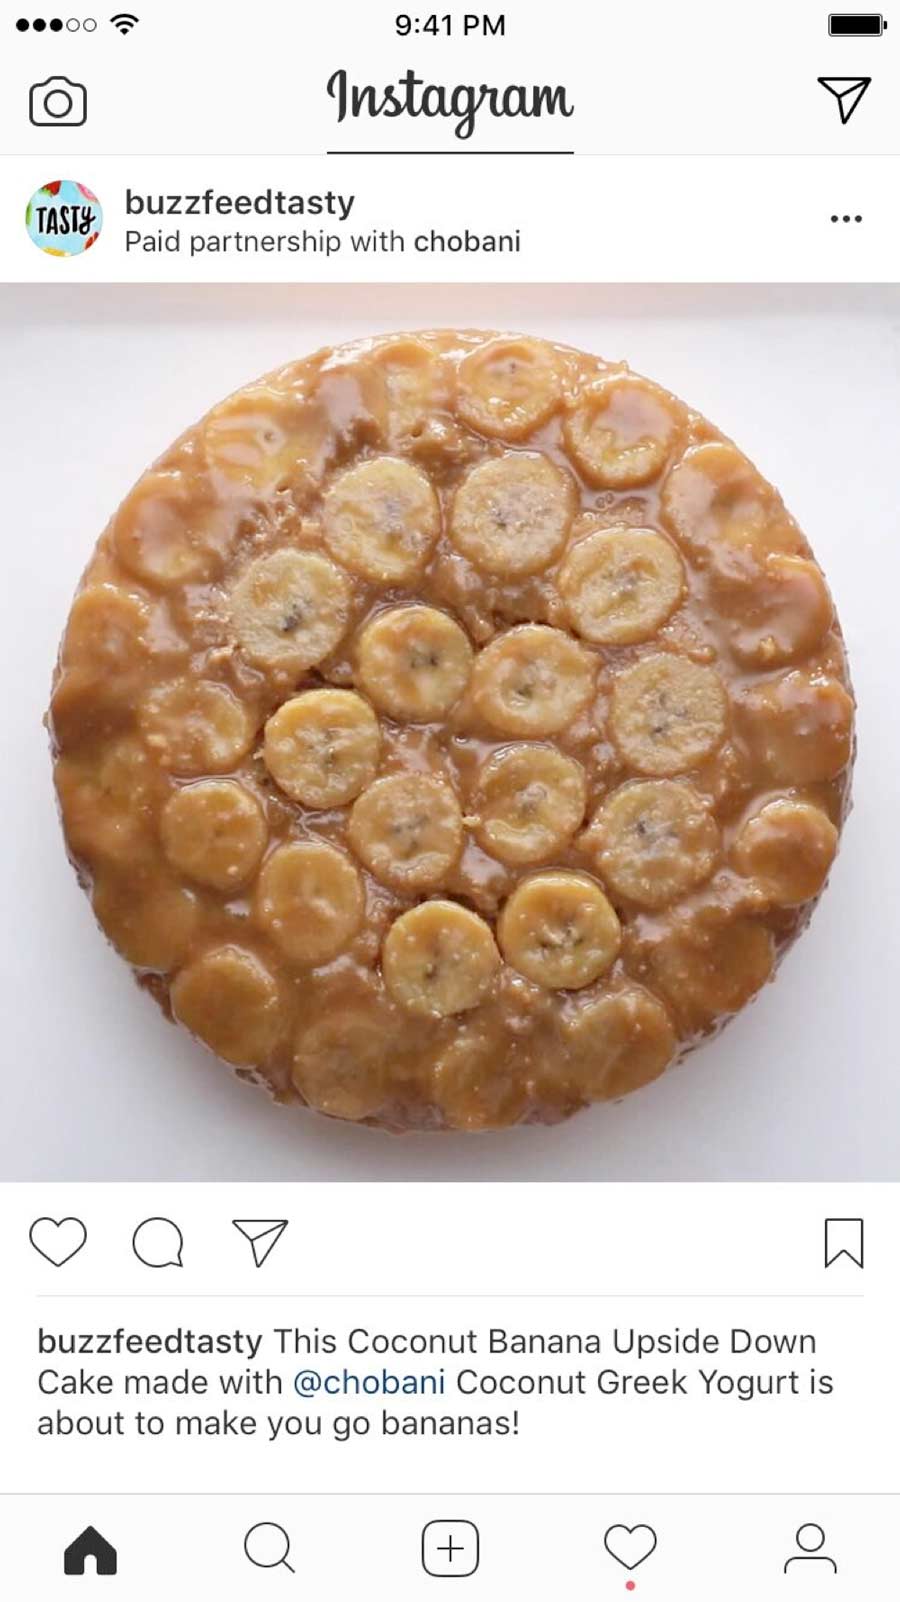 novo formato de patrocinio no instagram